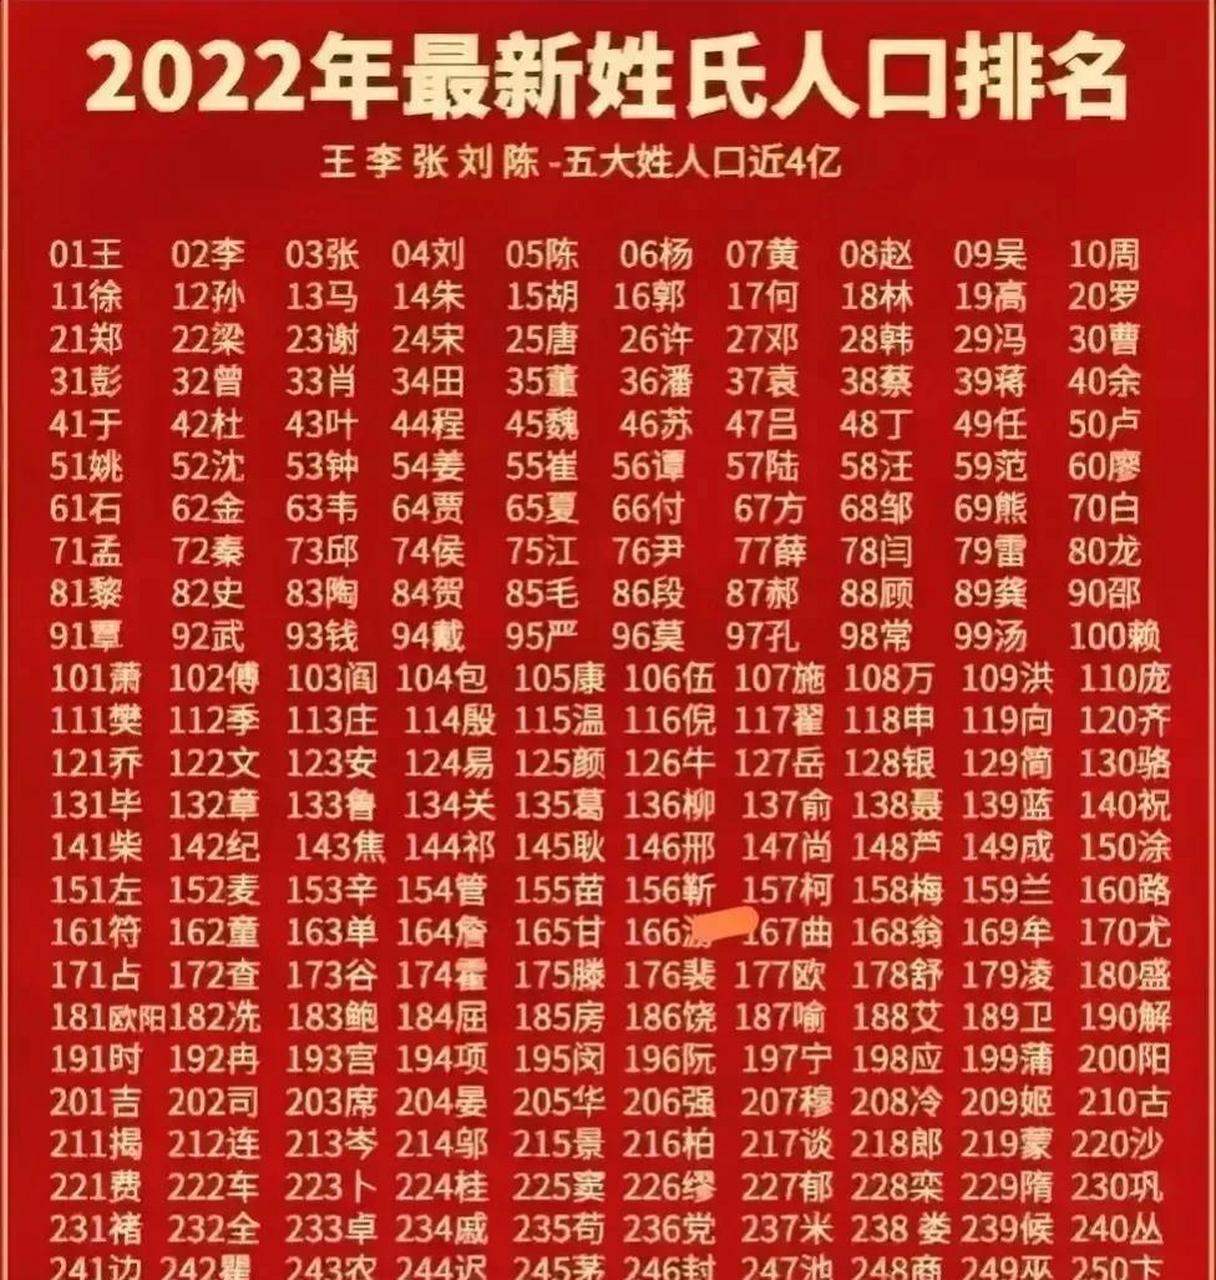 这是2022年 全国最新姓氏人口排名:孙姓第12,莫姓第96,米姓第237